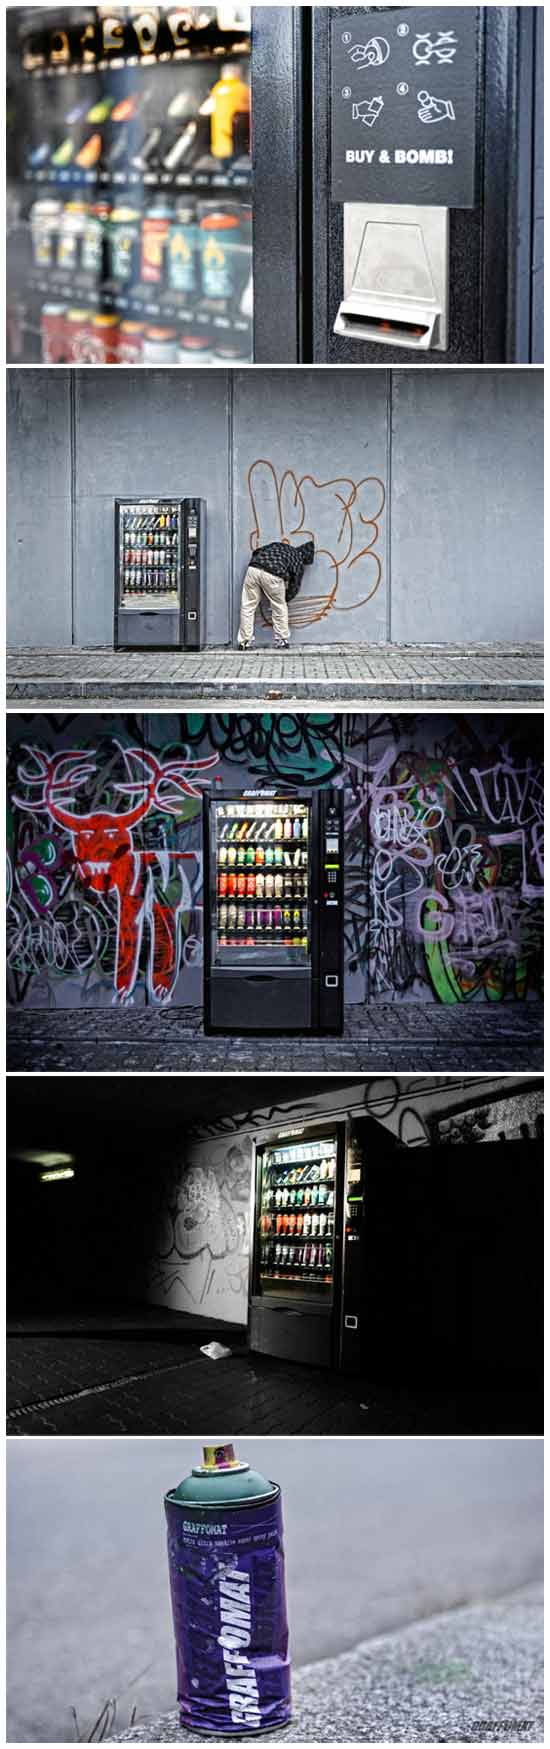 Граффоматы или автоматы для граффити